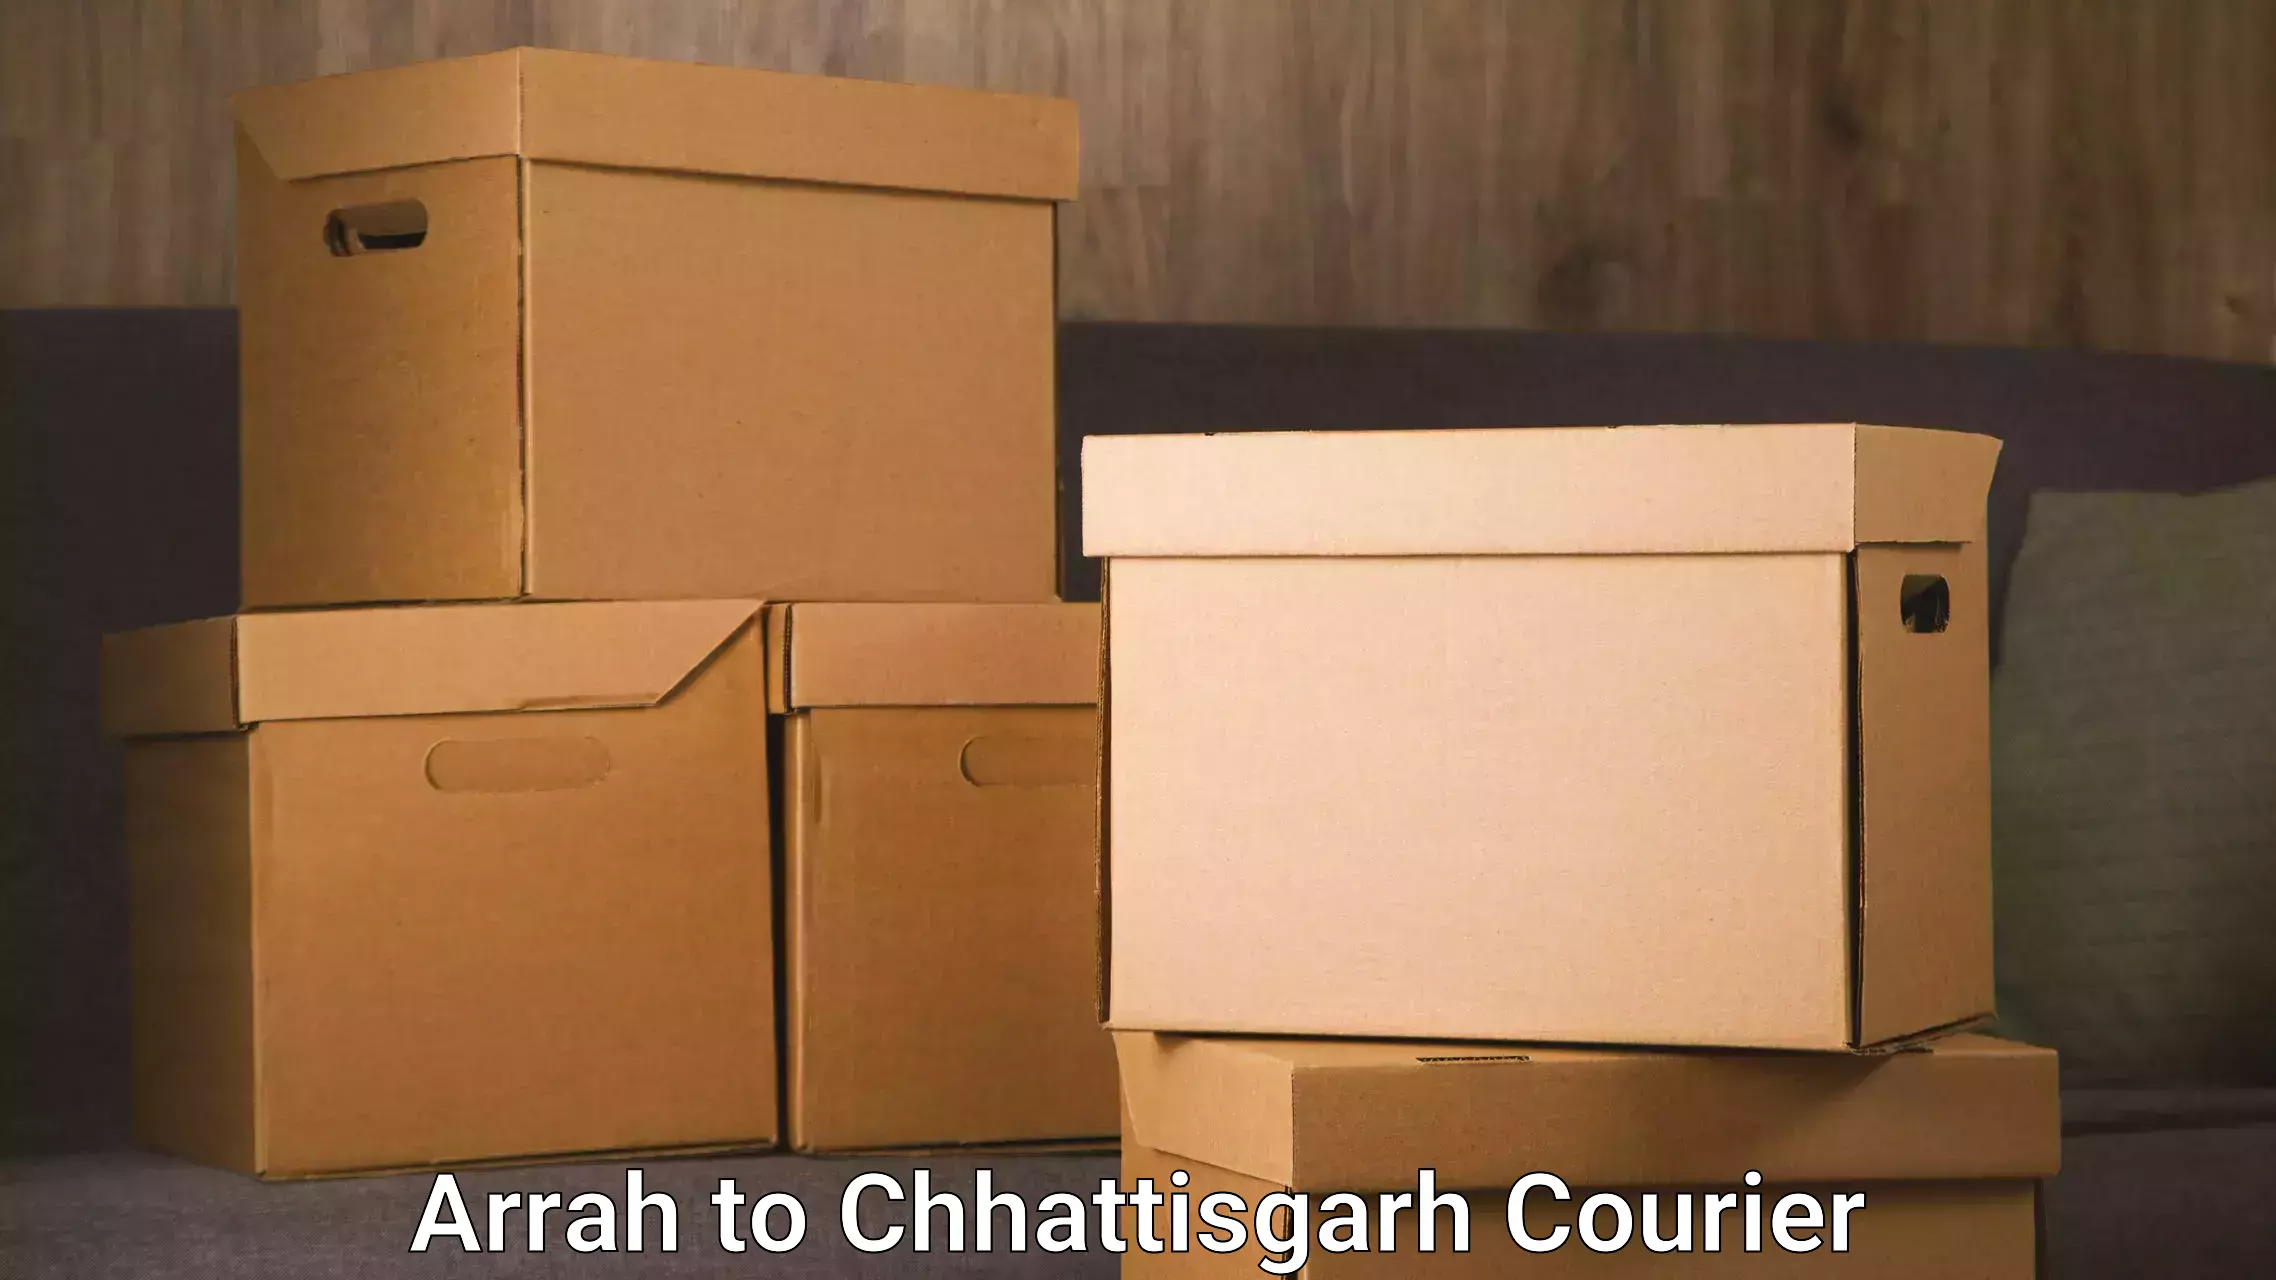 Household goods transport service Arrah to Chhattisgarh